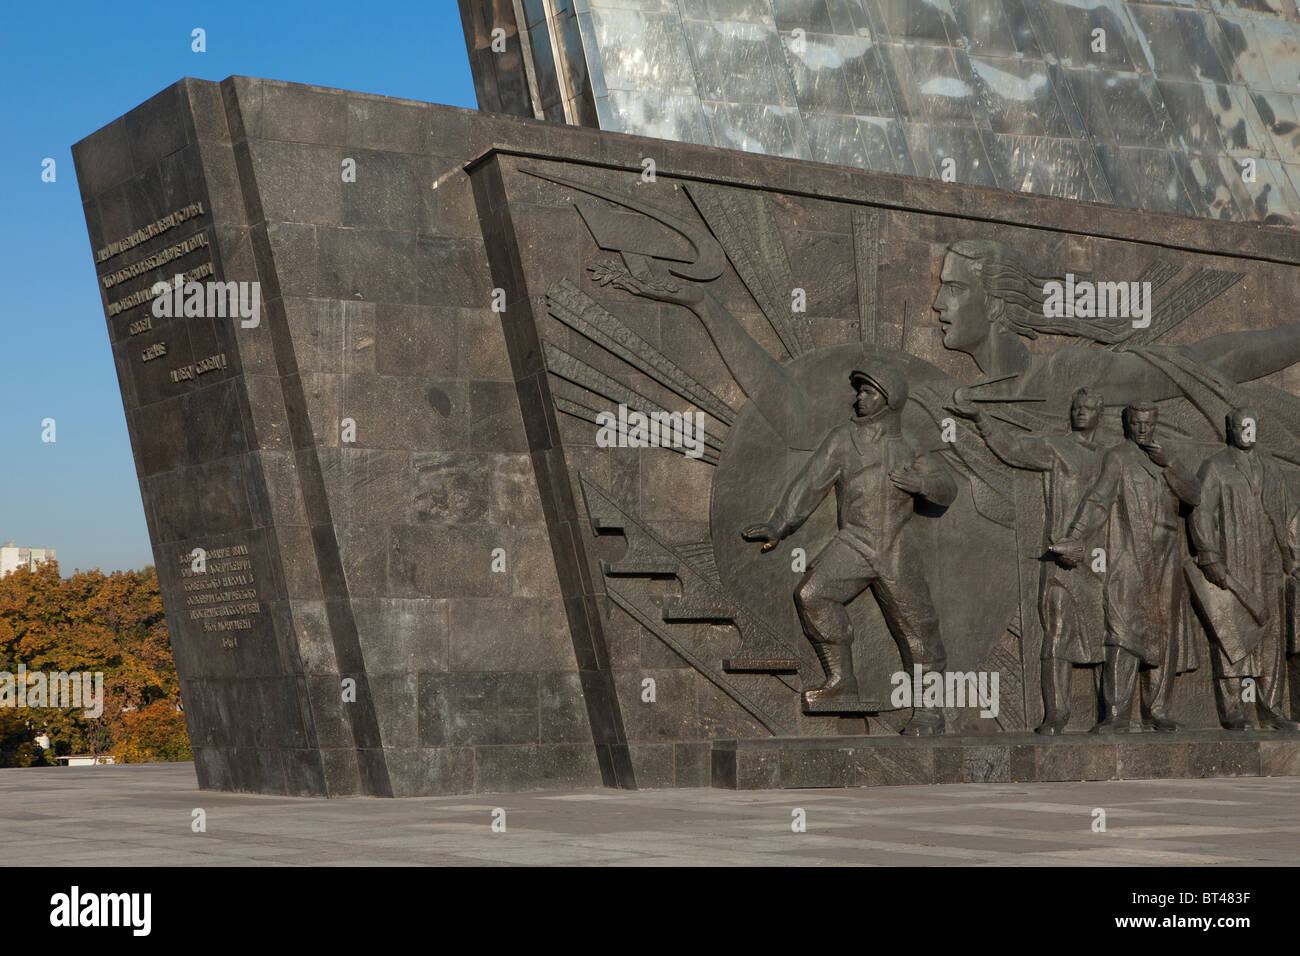 Relief montrant le premier cosmonaute Youri Gagarine sur le Monument des conquérants de l'espace de Moscou, Russie Banque D'Images